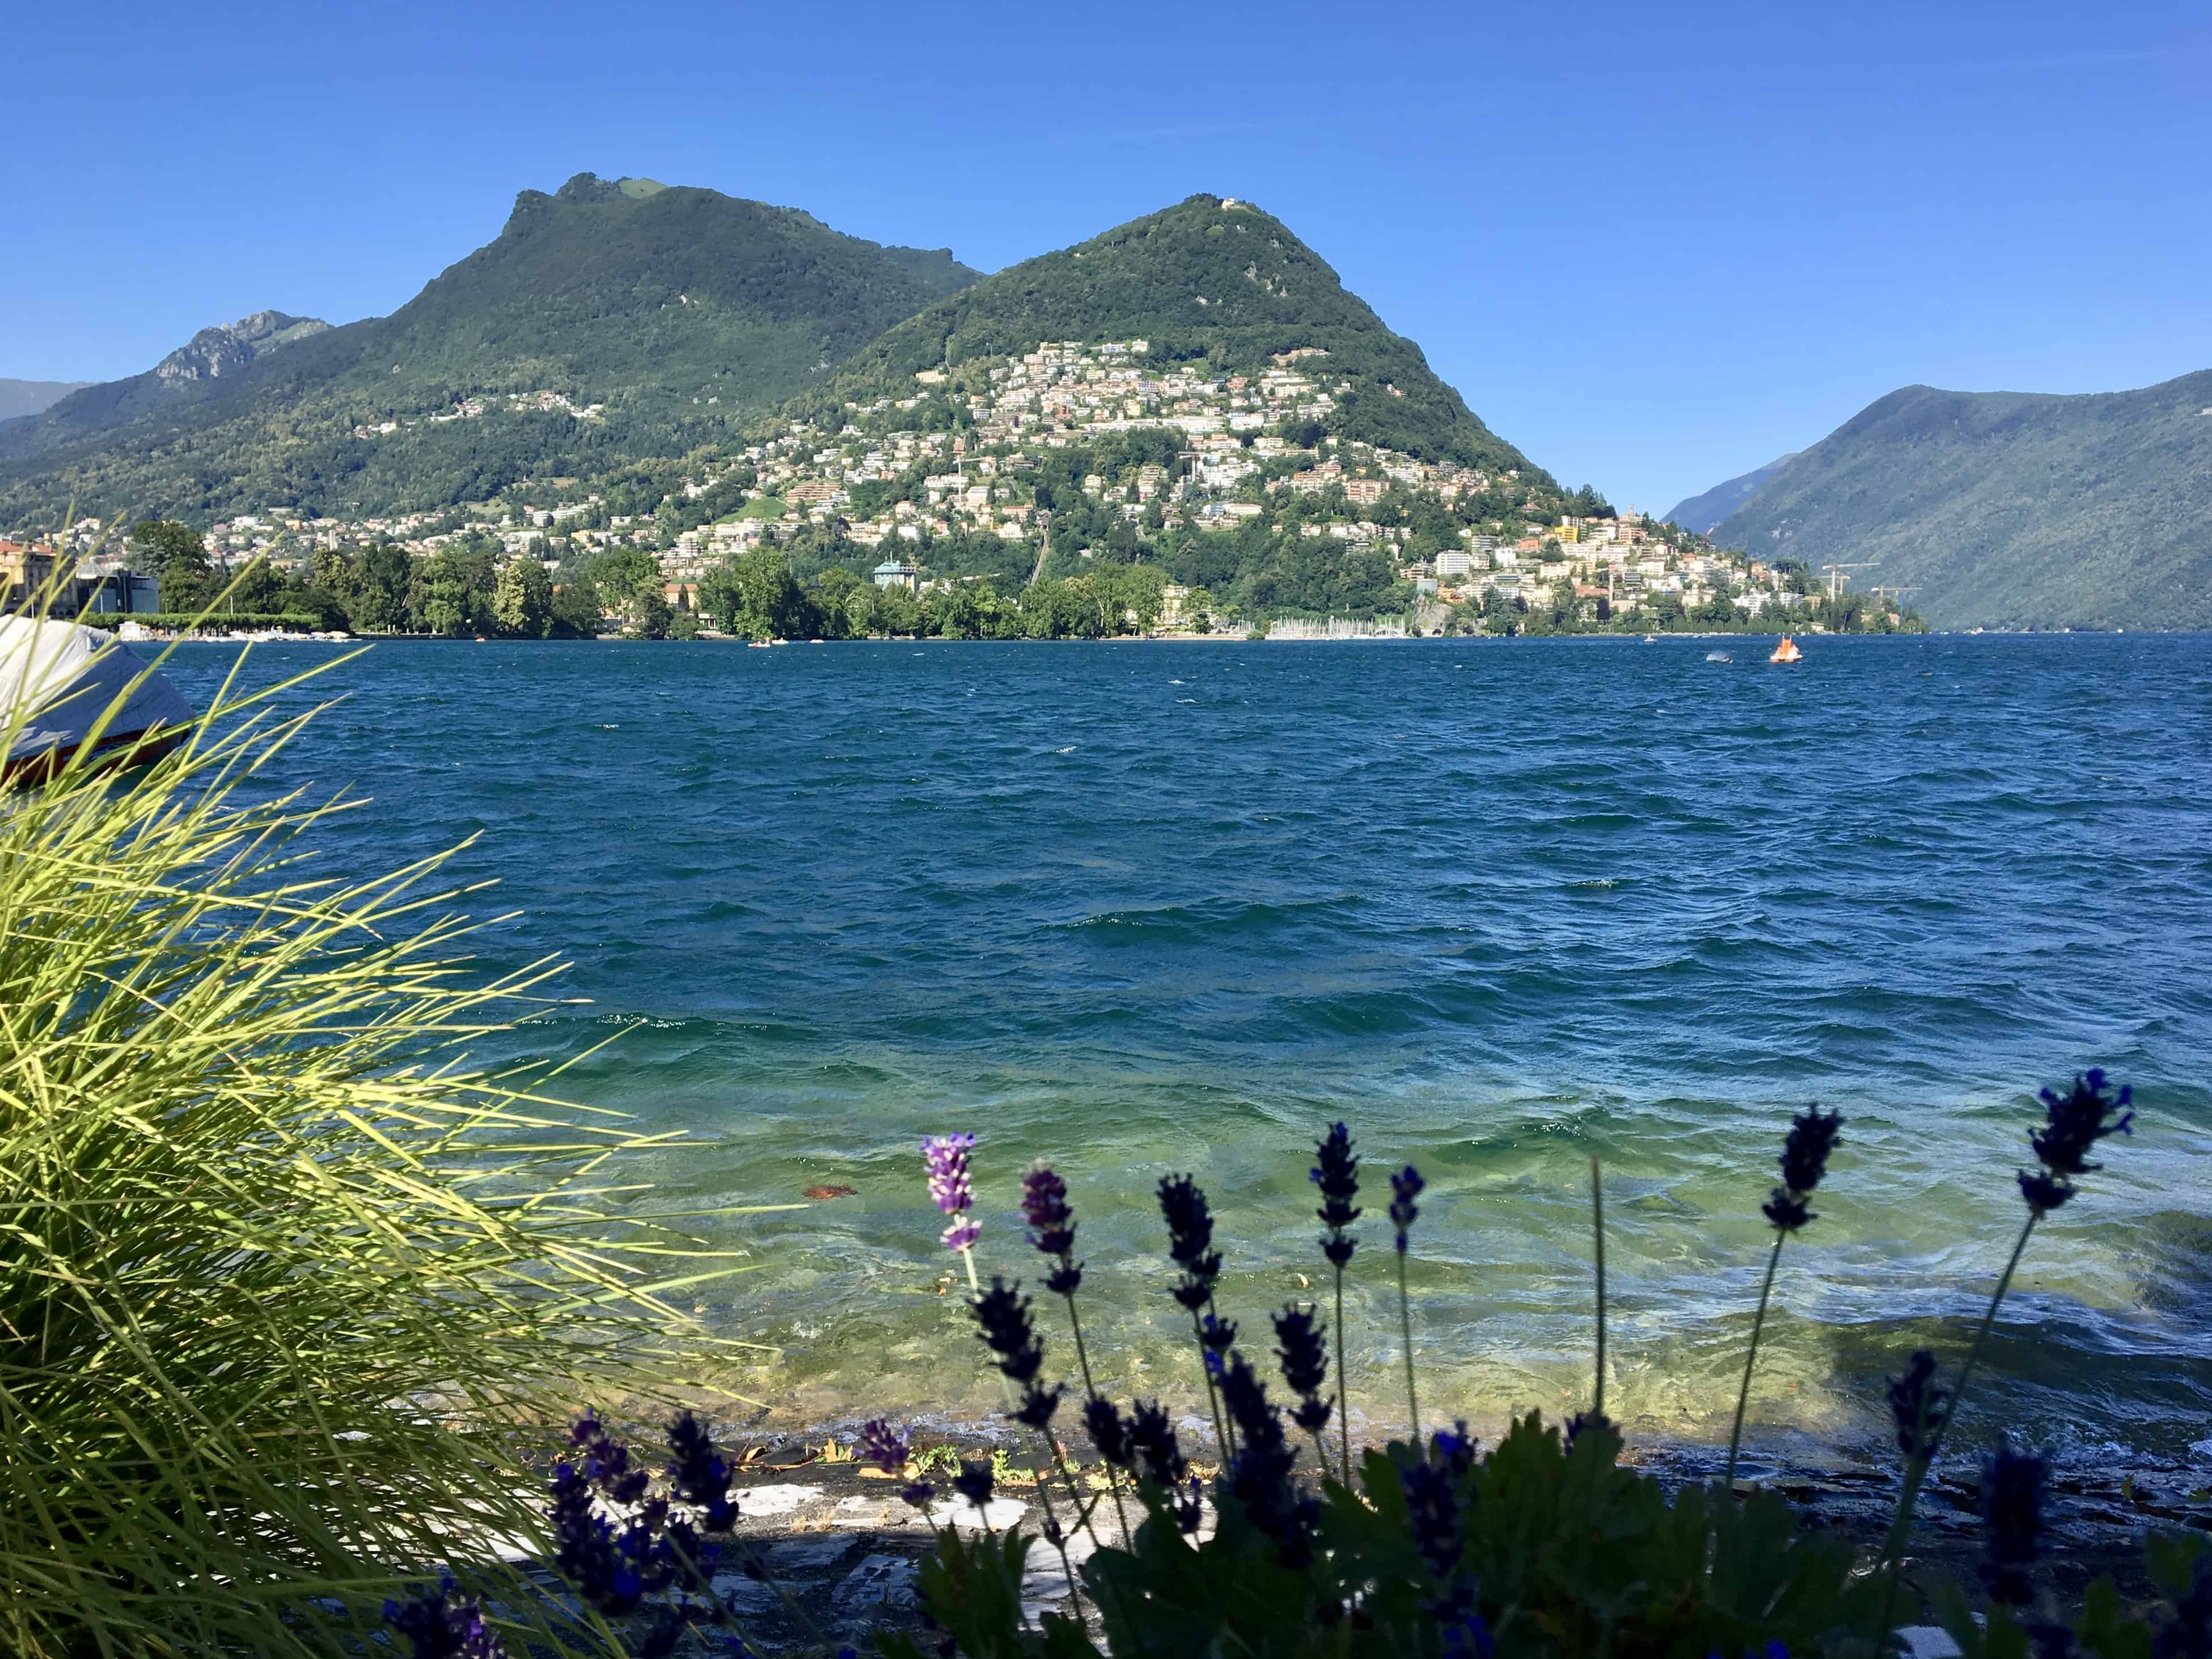 Is Lugano Worth Visiting? 9 Reasons Why You Should Visit Lugano